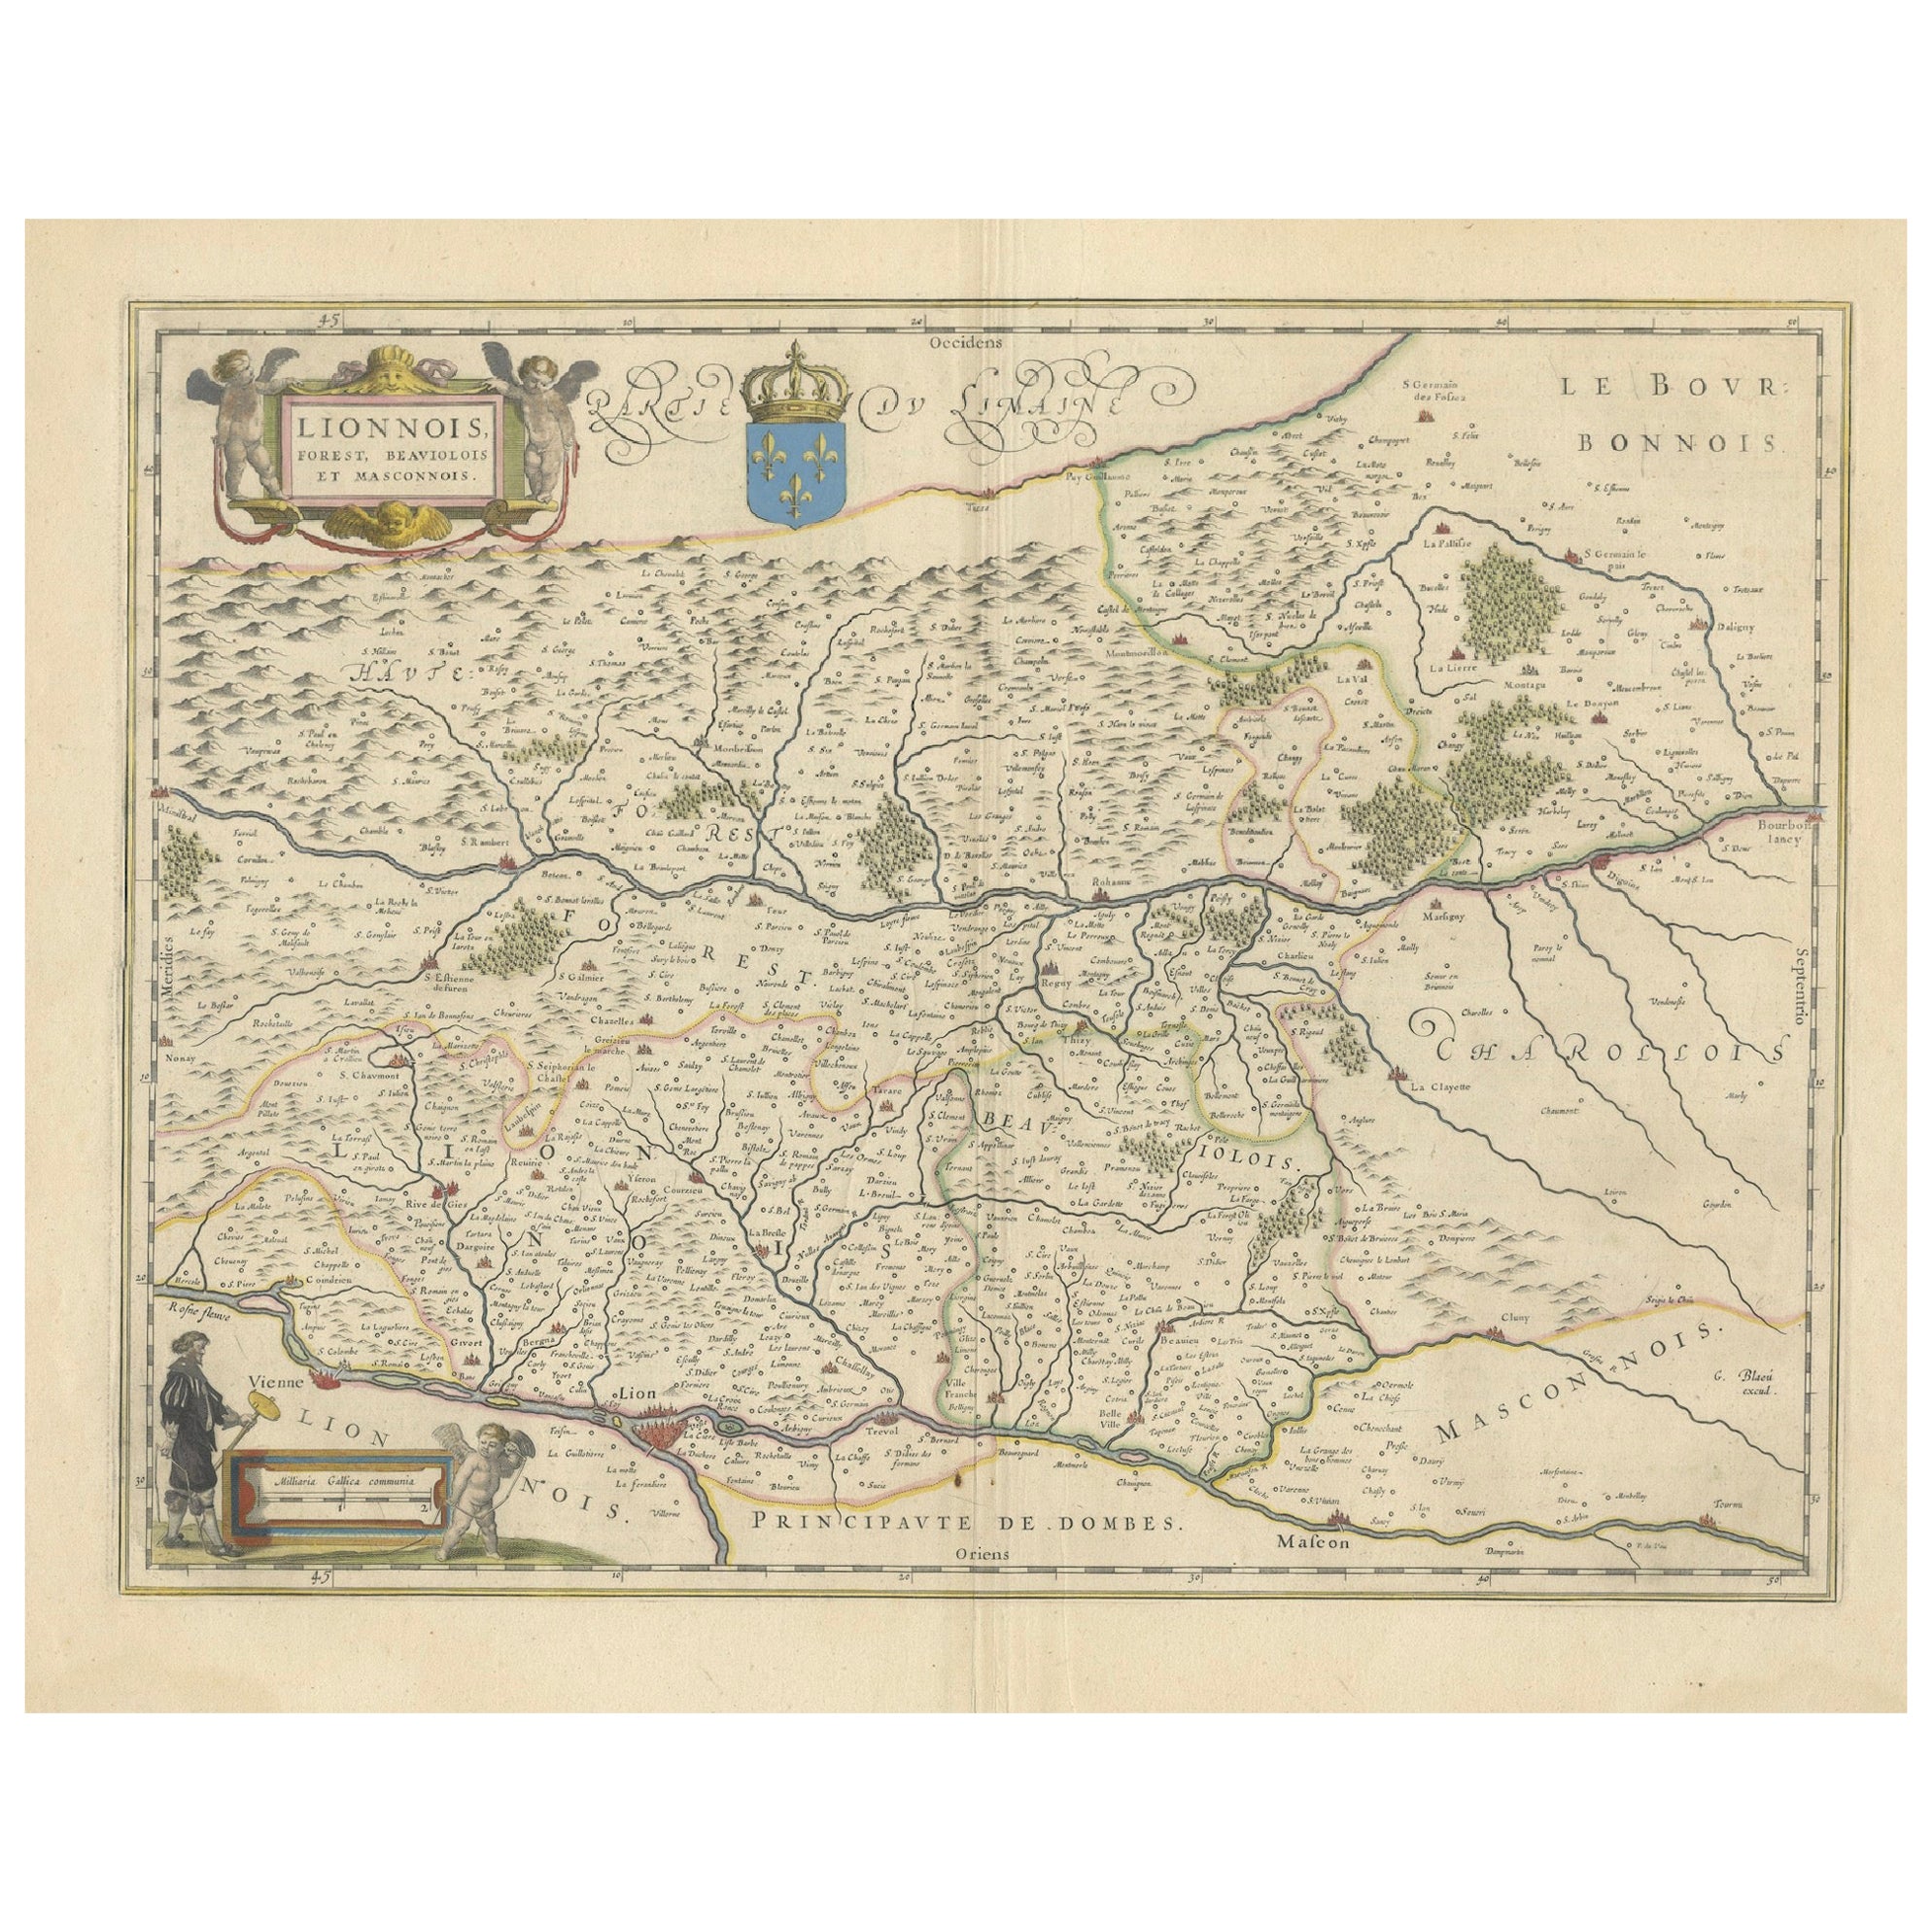 Lyonnais, Beaujolais, Forez, Mâconnais: Eine Darstellung der Provinzen Frankreichs aus dem Jahr 1644 im Angebot